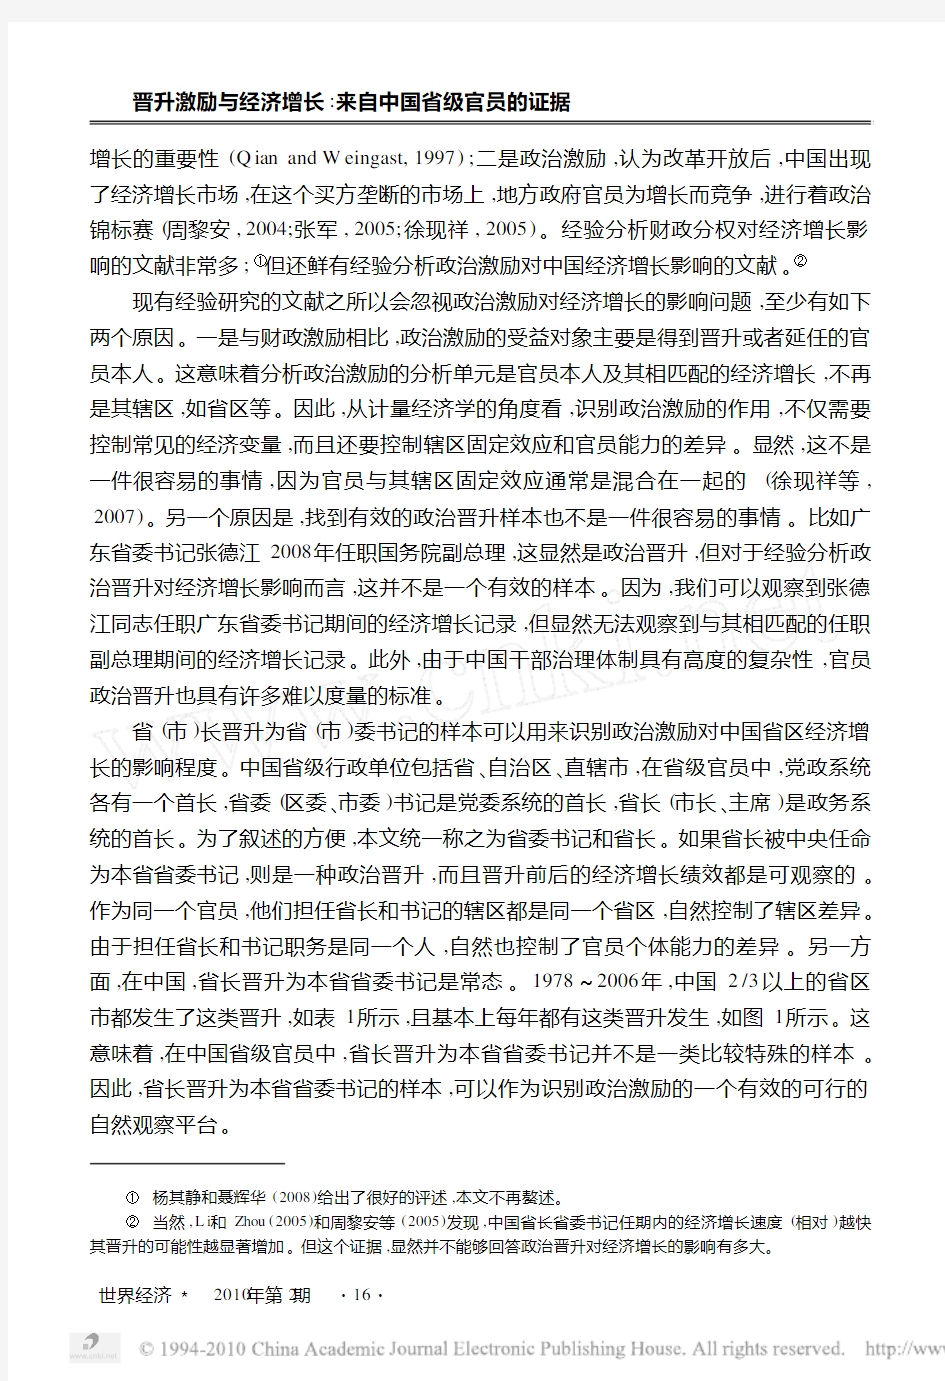 晋升激励与经济增长_来自中国省级官员的证据_徐现祥